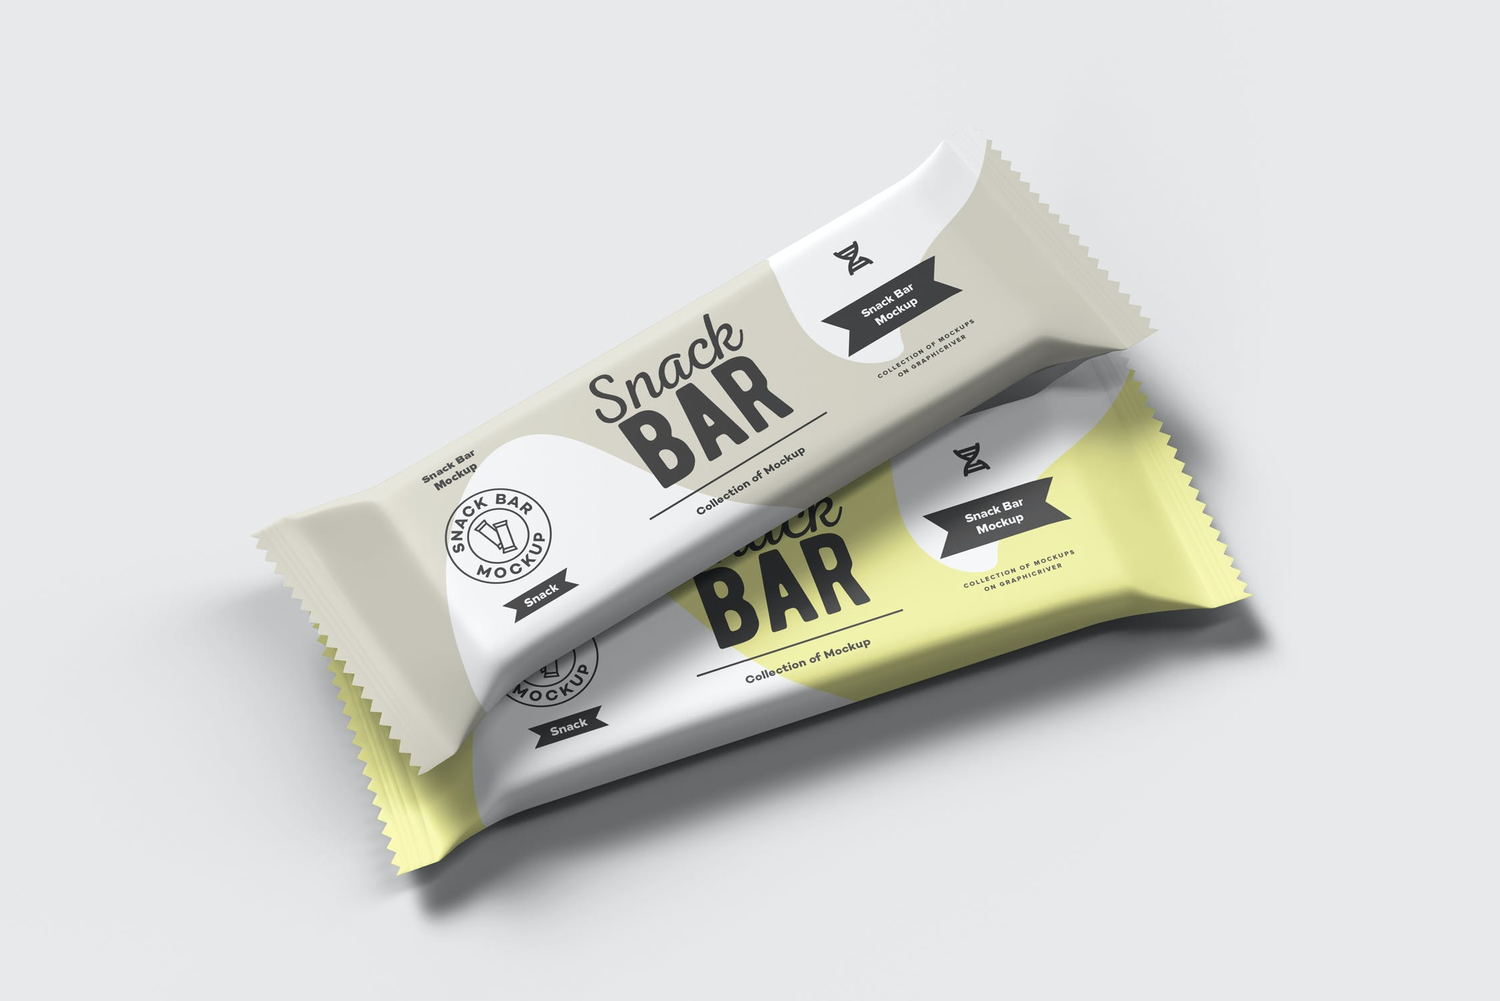 4758 能量棒代餐零食品包装袋设计贴图ps样机素材展示效果模板源文件 Snack Bar Mock-up@GOOODME.COM